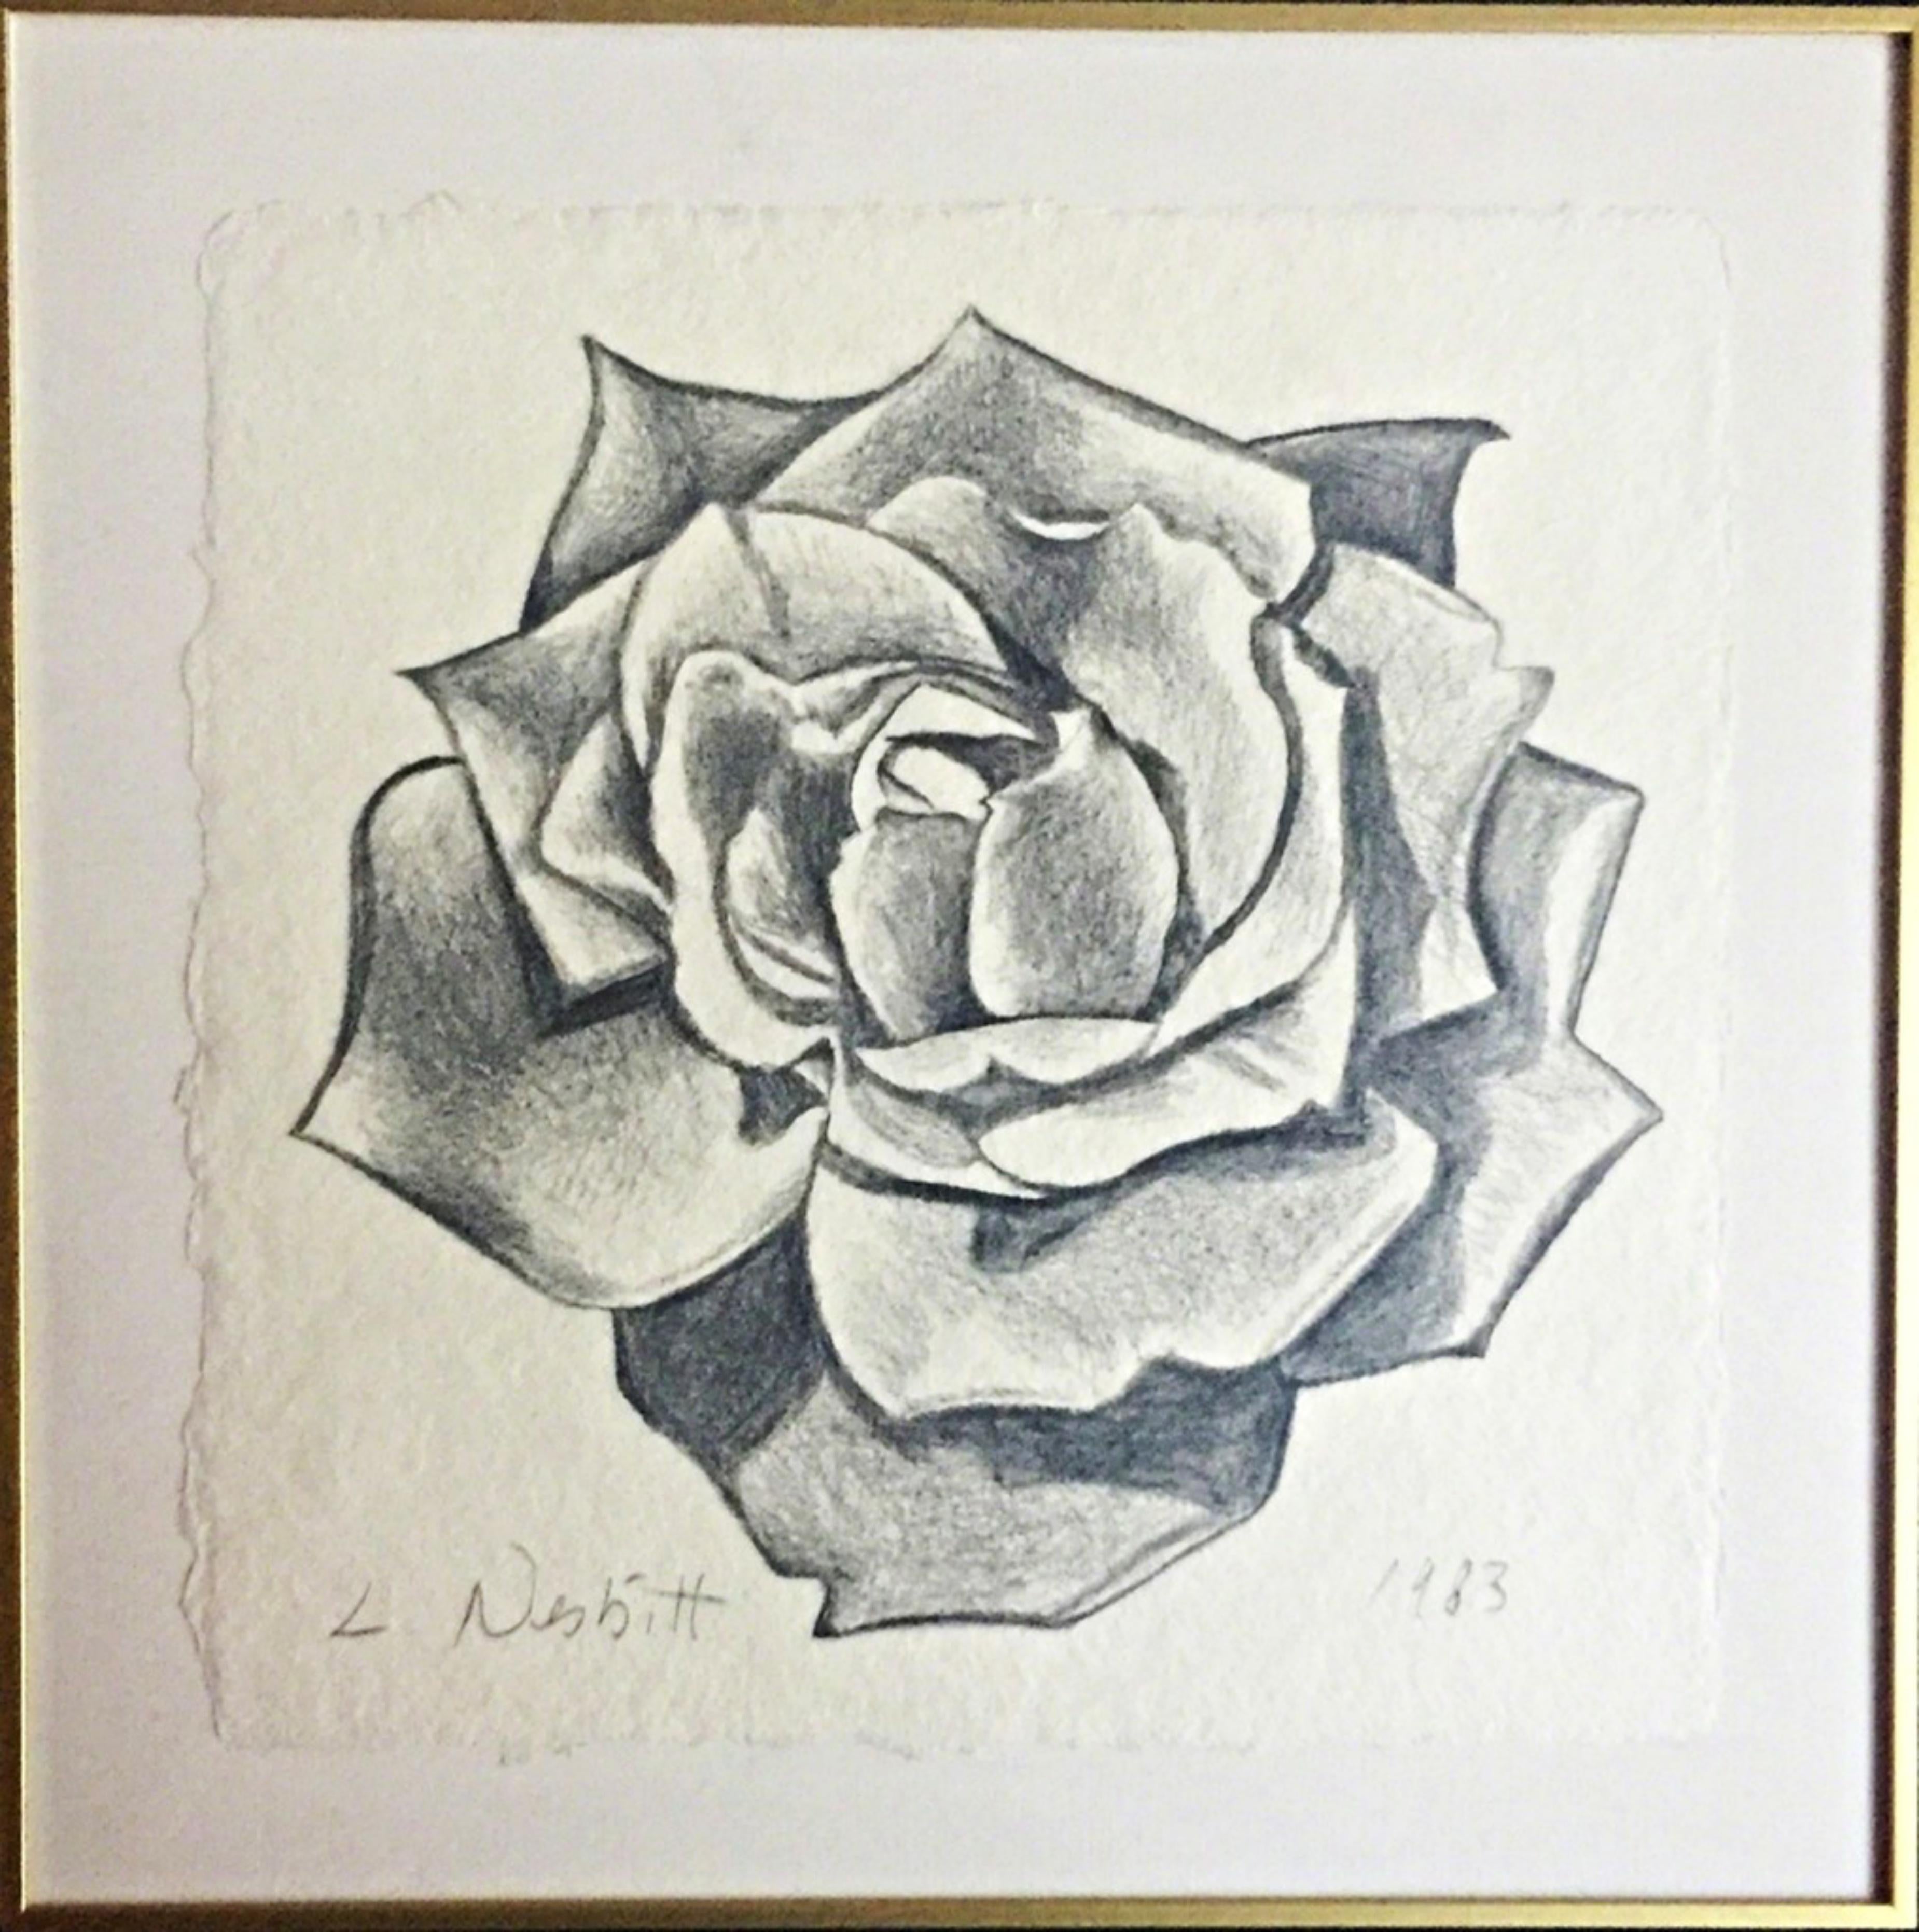 Exquis  Dessin de rose (unique) réalisé au graphite, signé à la main avec provenance - Art de Lowell Nesbitt